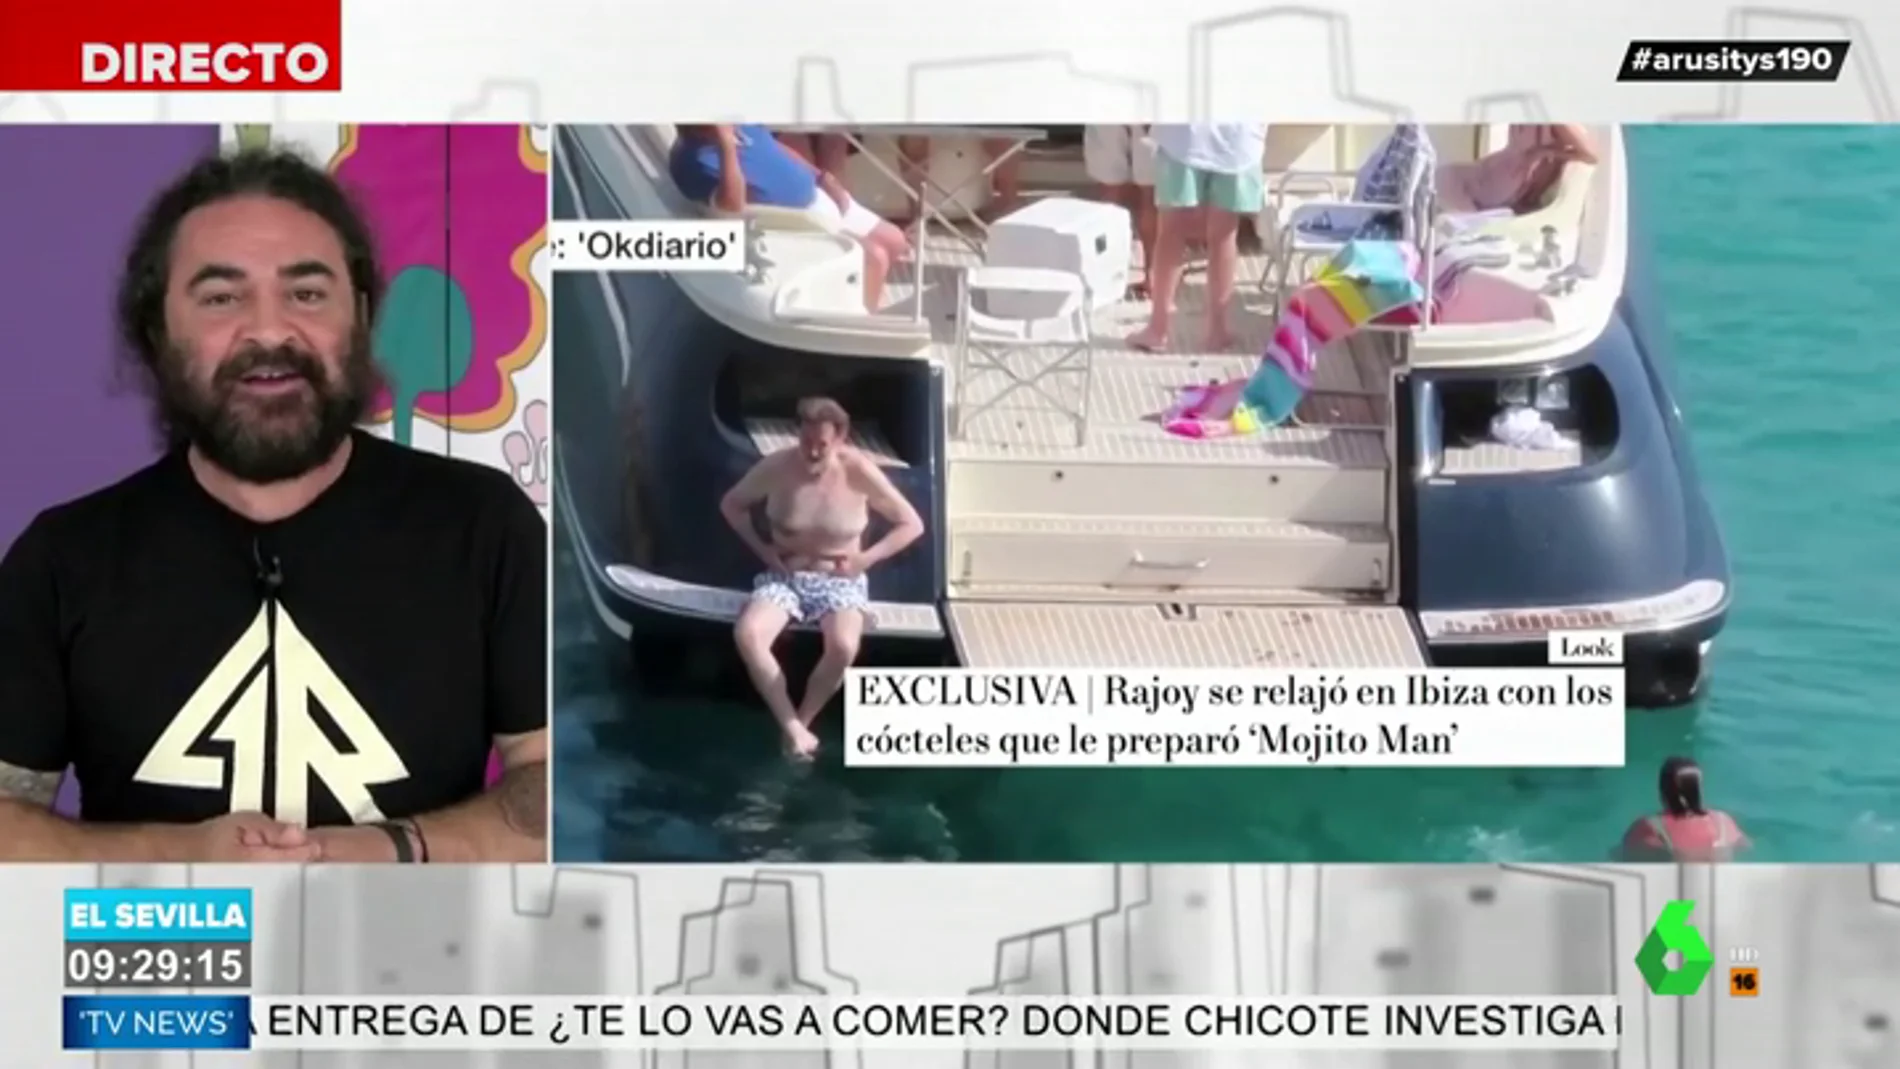 La reflexión de El Sevilla sobre las vacaciones de Rajoy en Ibiza